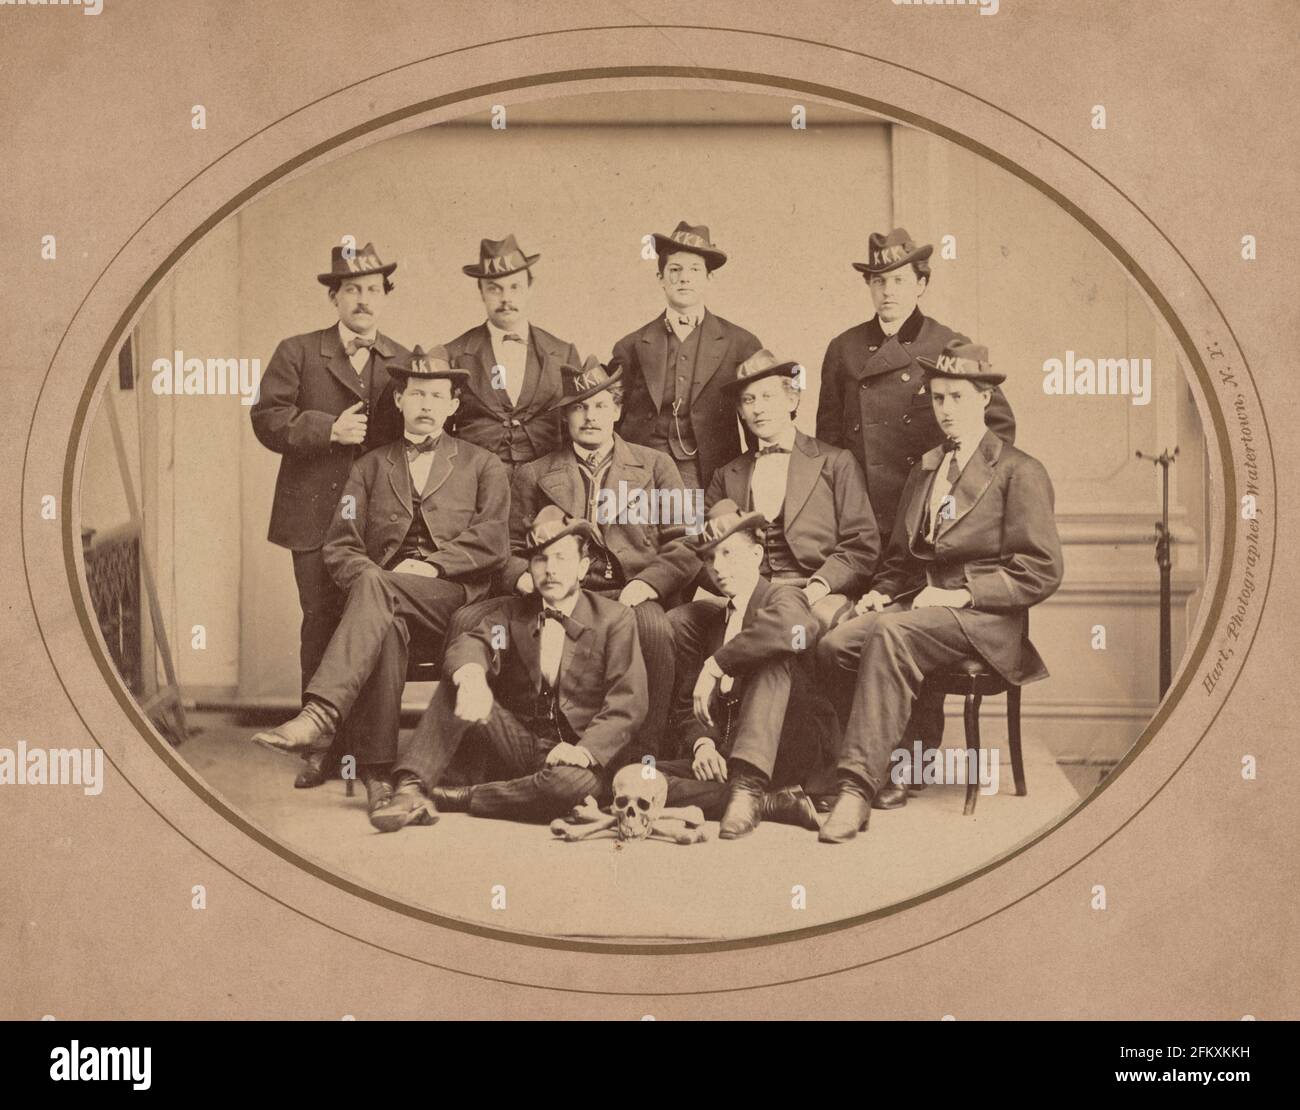 KU Klux Klan, Watertown Division 289 - la fotografia mostra dieci uomini posti seduti e in piedi, indossando cappelli con 'KKK' in grandi lettere, e con un cranio e ossa disposti sul pavimento di fronte a loro, circa 1870 Foto Stock